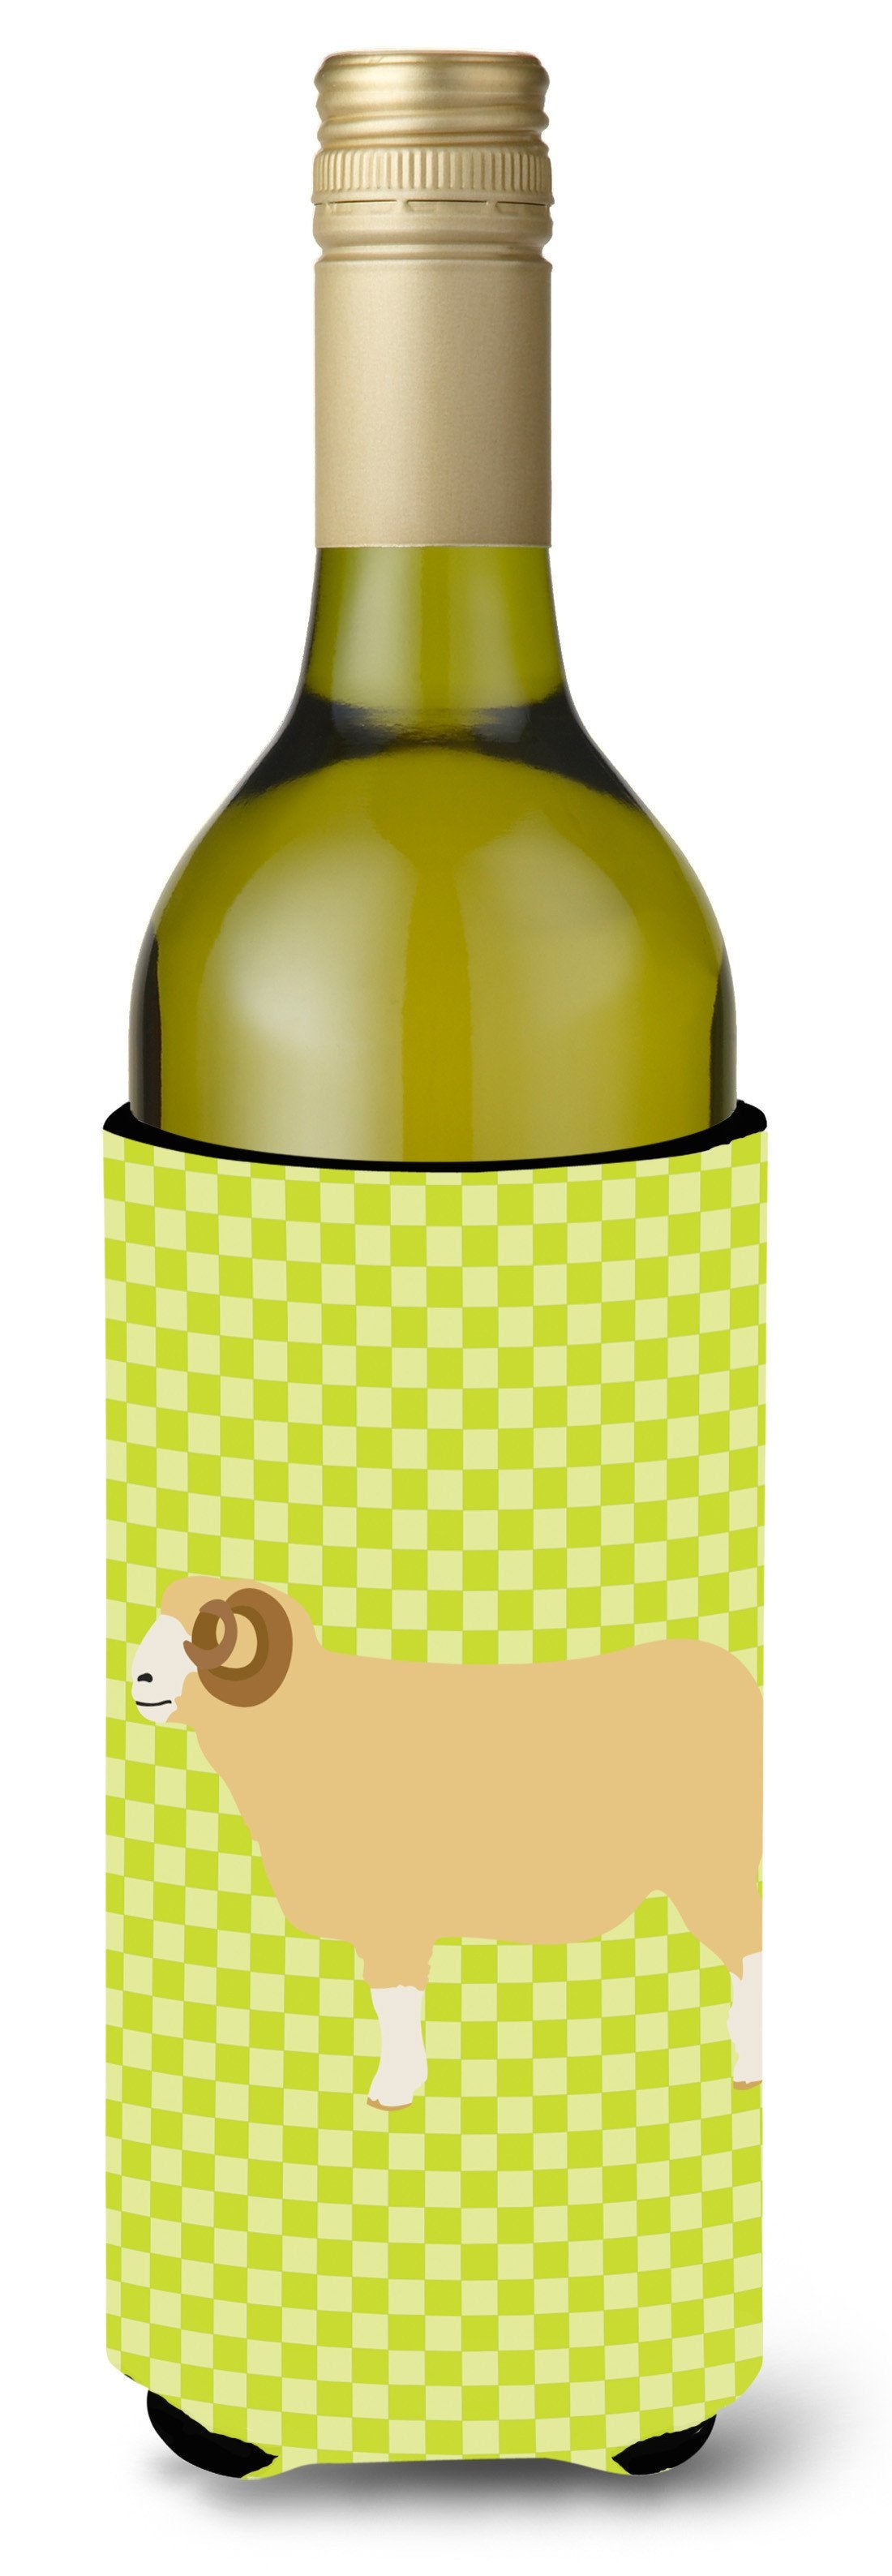 Horned Dorset Sheep Green Wine Bottle Beverge Insulator Hugger BB7806LITERK by Caroline's Treasures